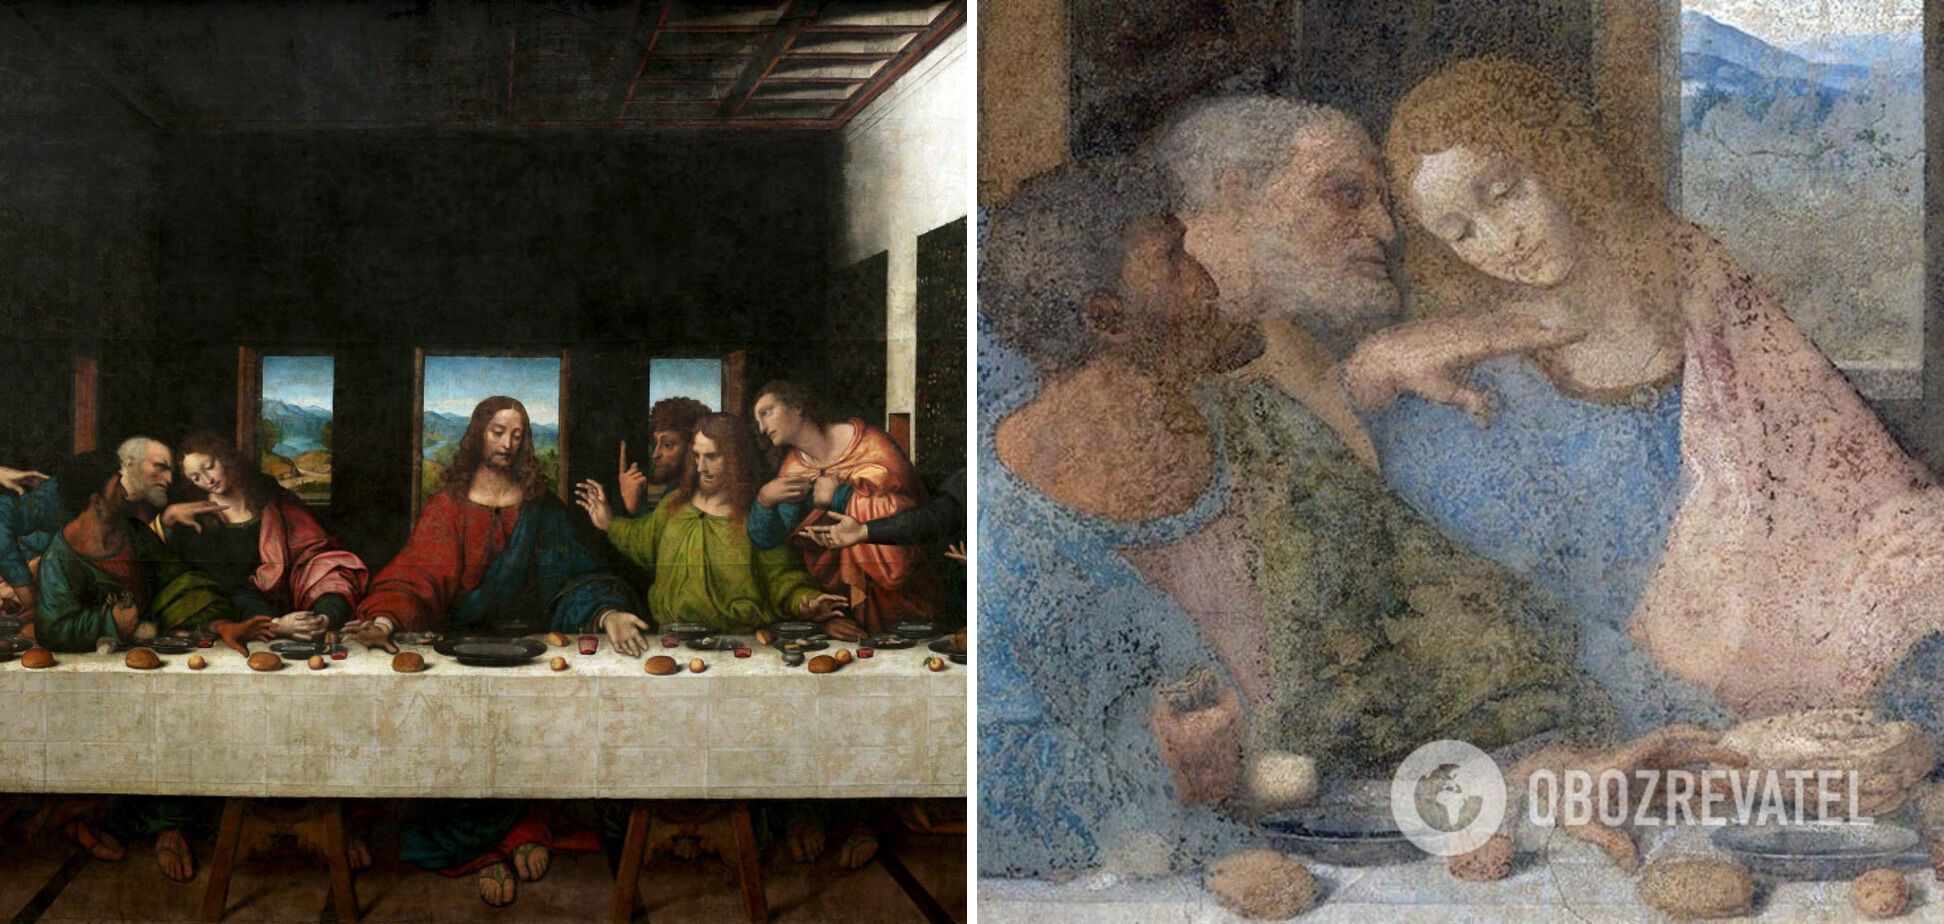 Леонардо да Винчи вместо апостола изобразил женщину.